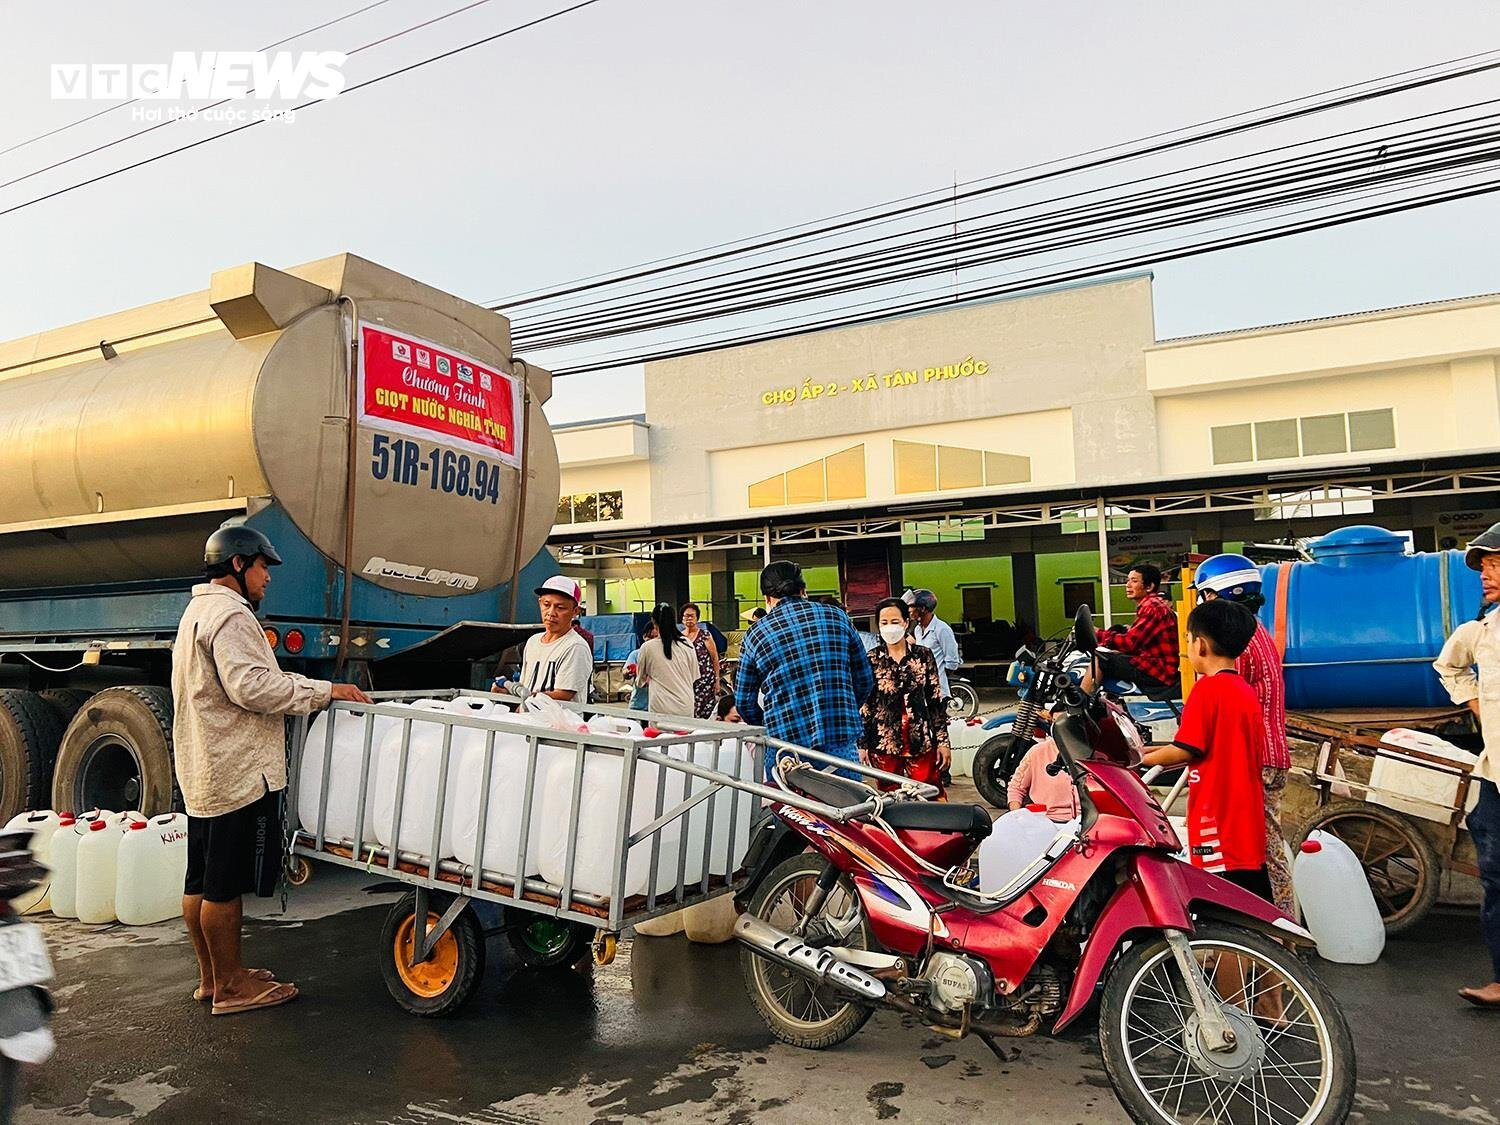 Hạn mặn ở Tiền Giang: Người dân đội nắng, thức đêm chở từng can nước miễn phí - 10